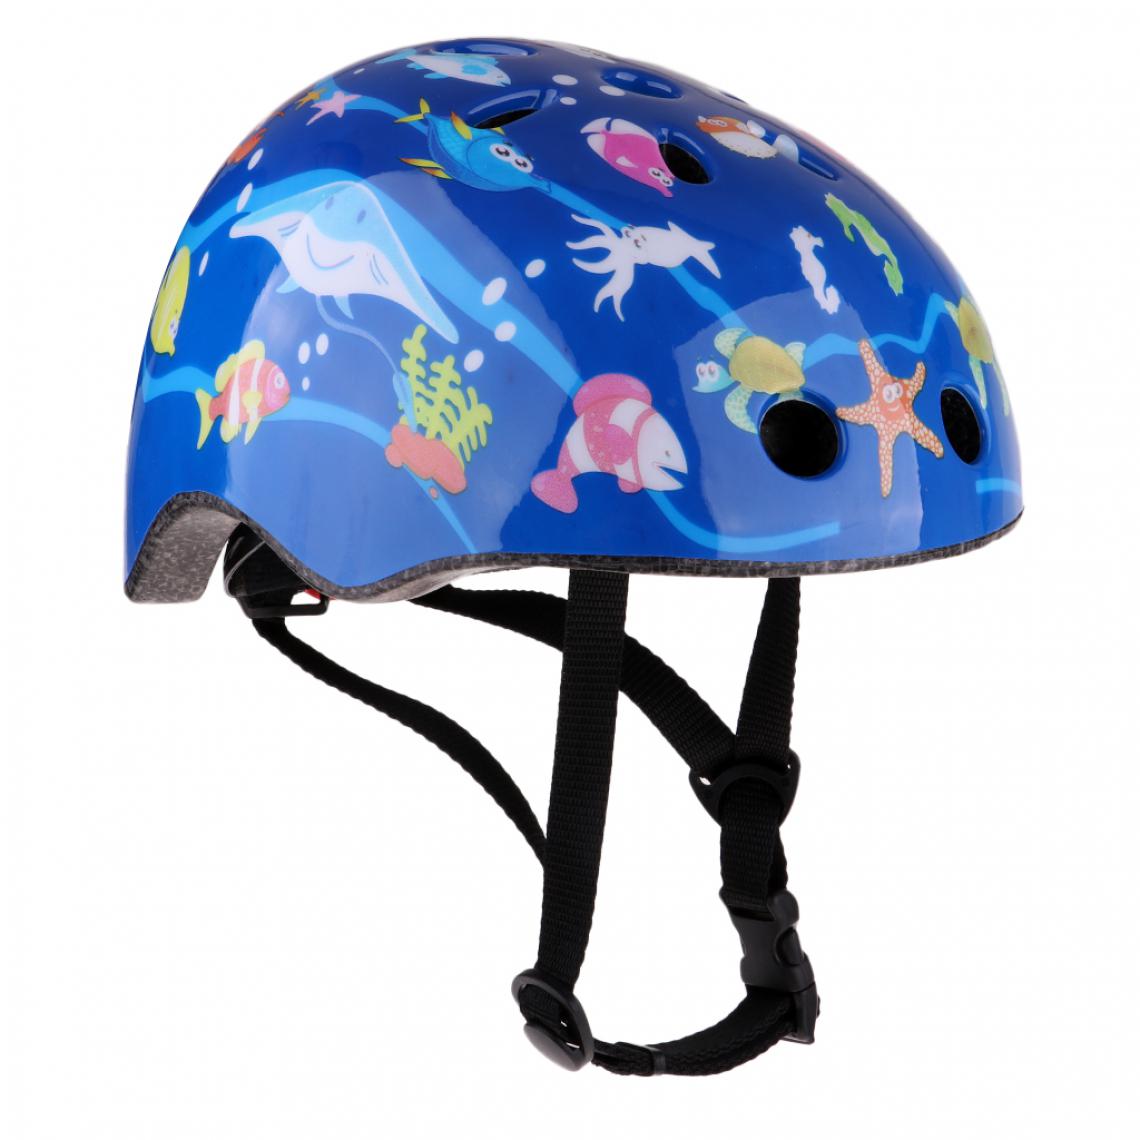 marque generique - La garde de casque de sécurité de sport en plein air de vélo de patin à roulettes d'enfants garde le rose - Accessoires et Pièces Détachées